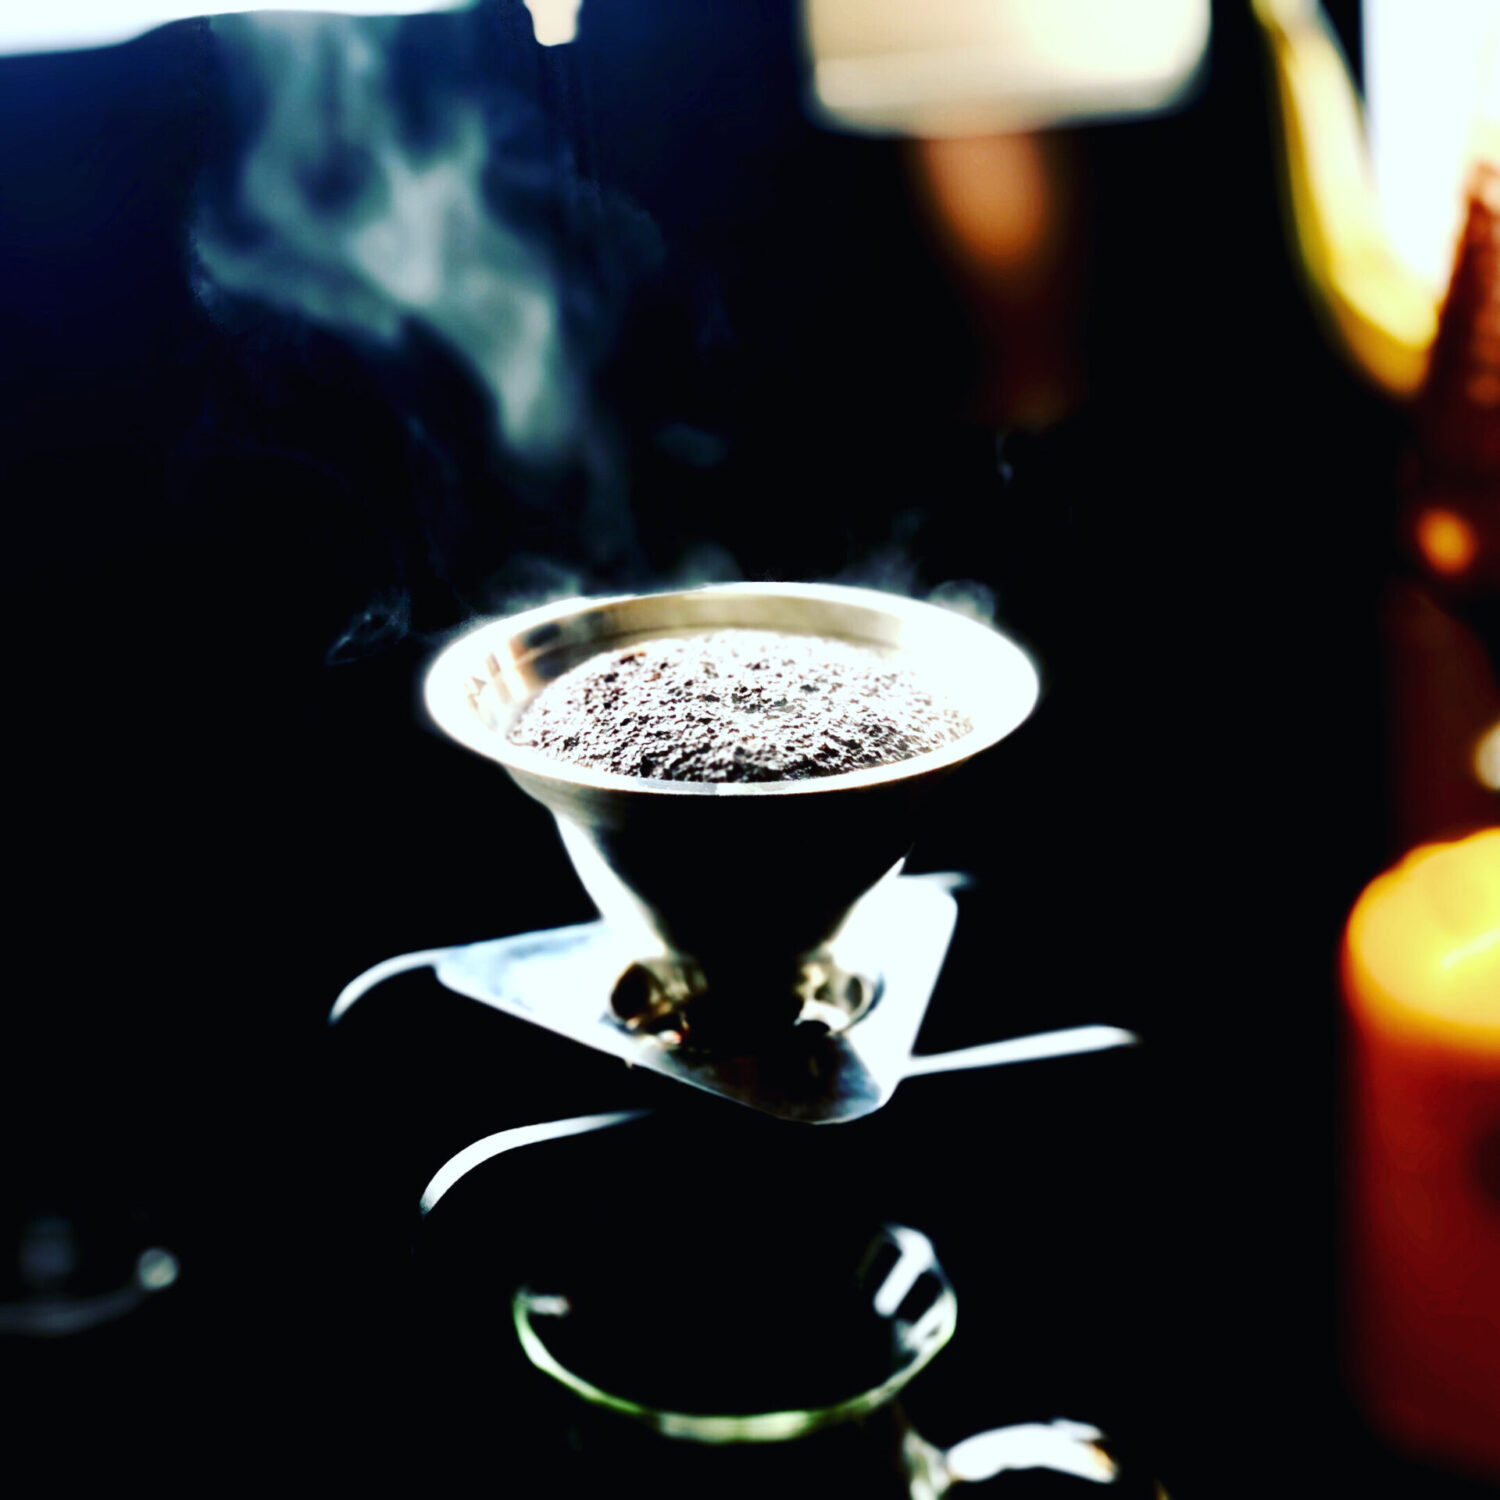 【ウチカフェ】自宅で最高のコーヒーを飲む方法。おすすめコーヒー器具紹介